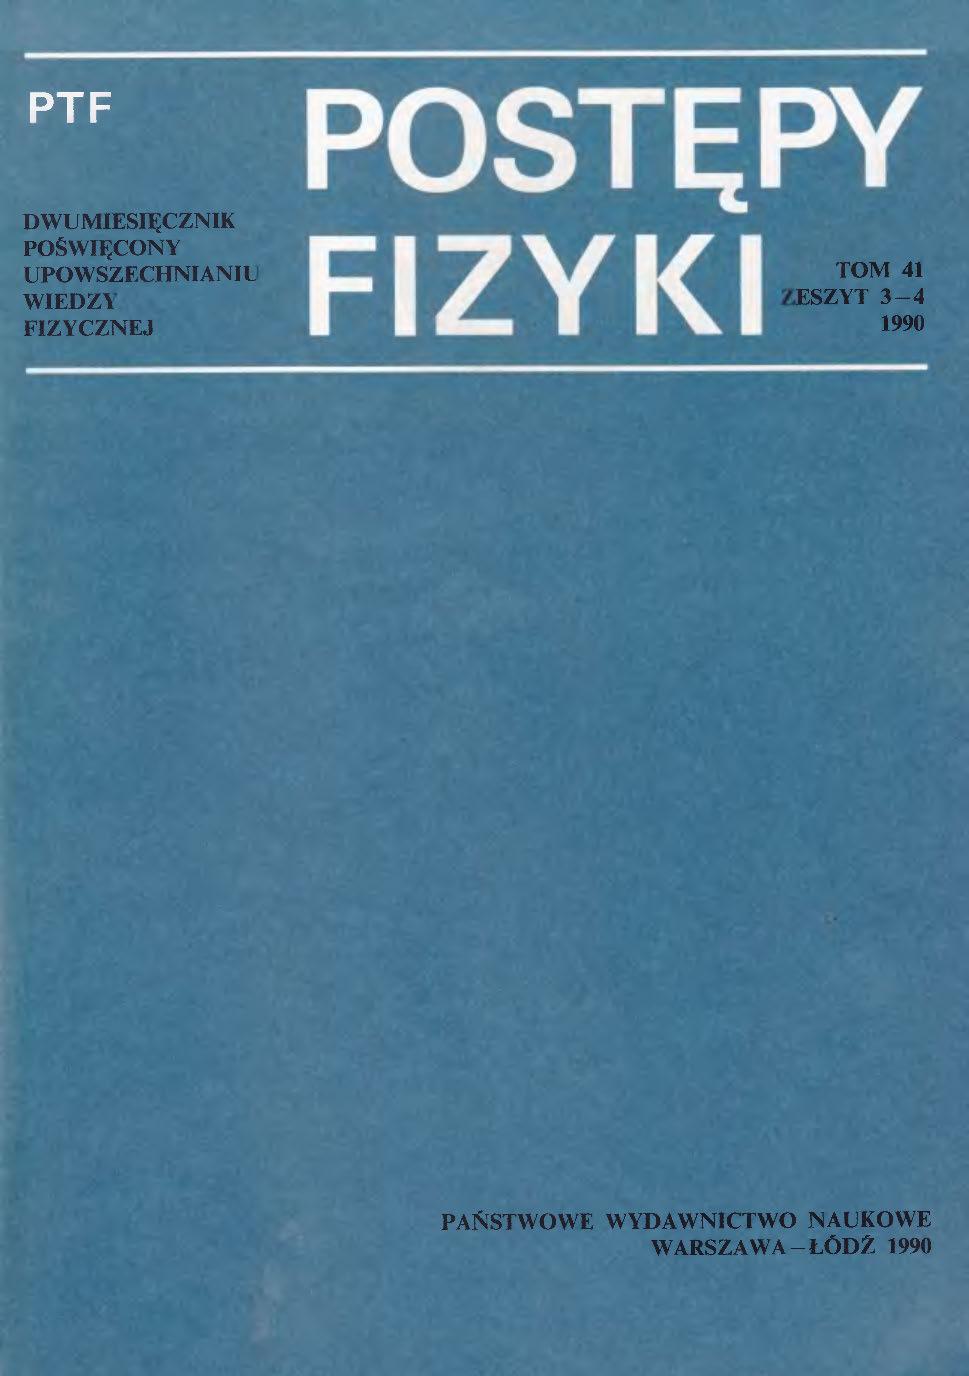 Postępy Fizyki 41 (3-4) 1990